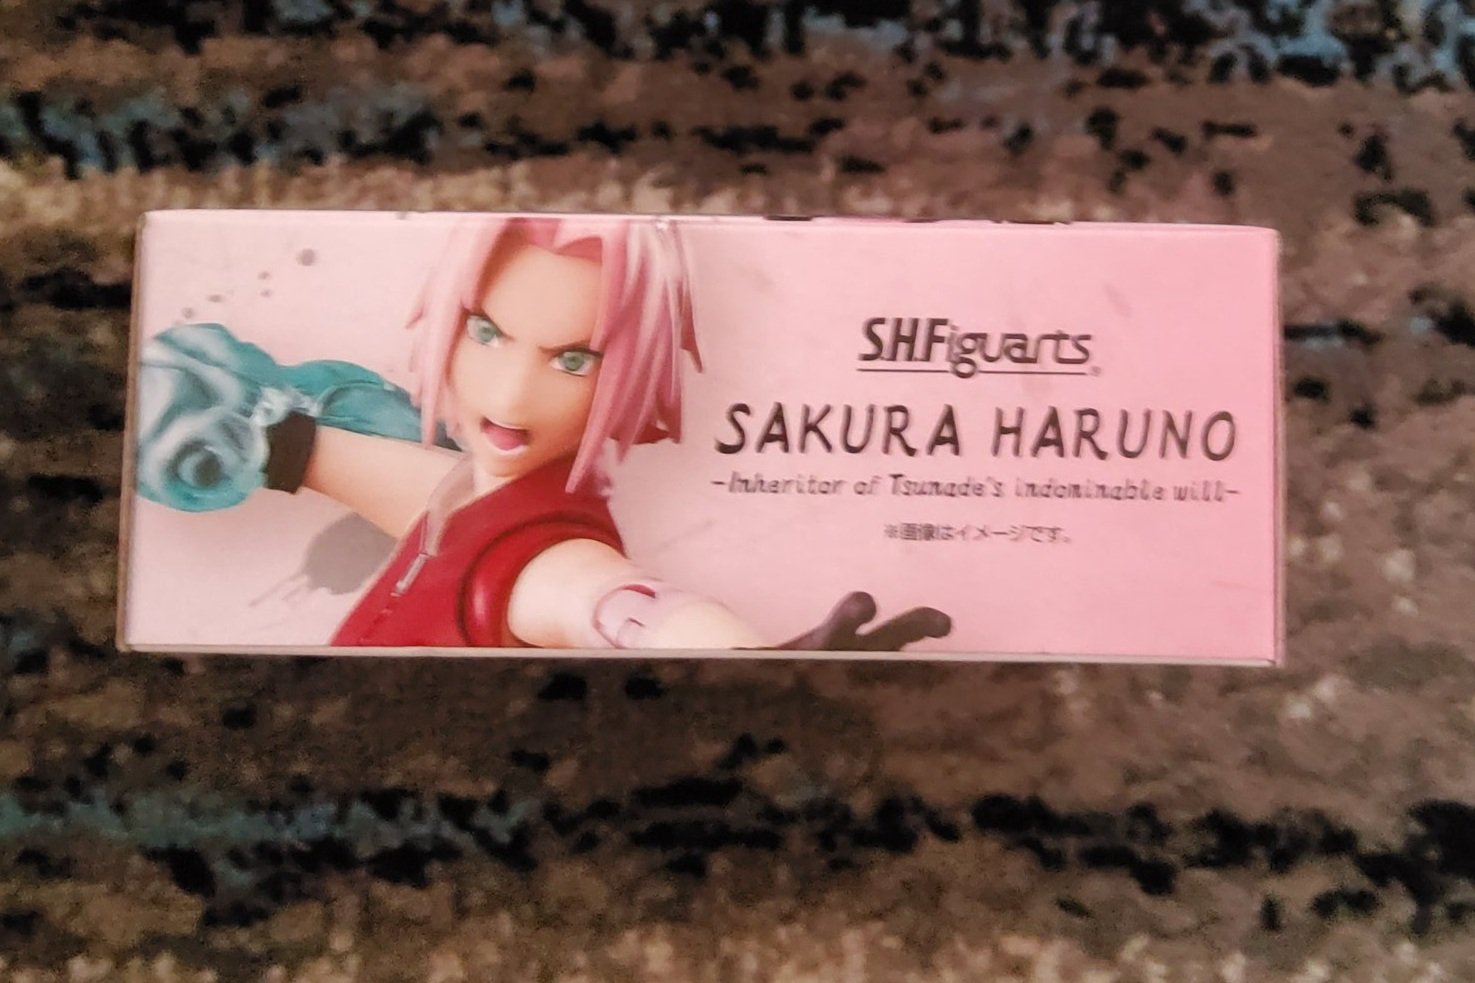 Naruto Shippuden Sakura Haruno Inheritor of Tsunade's Indominable